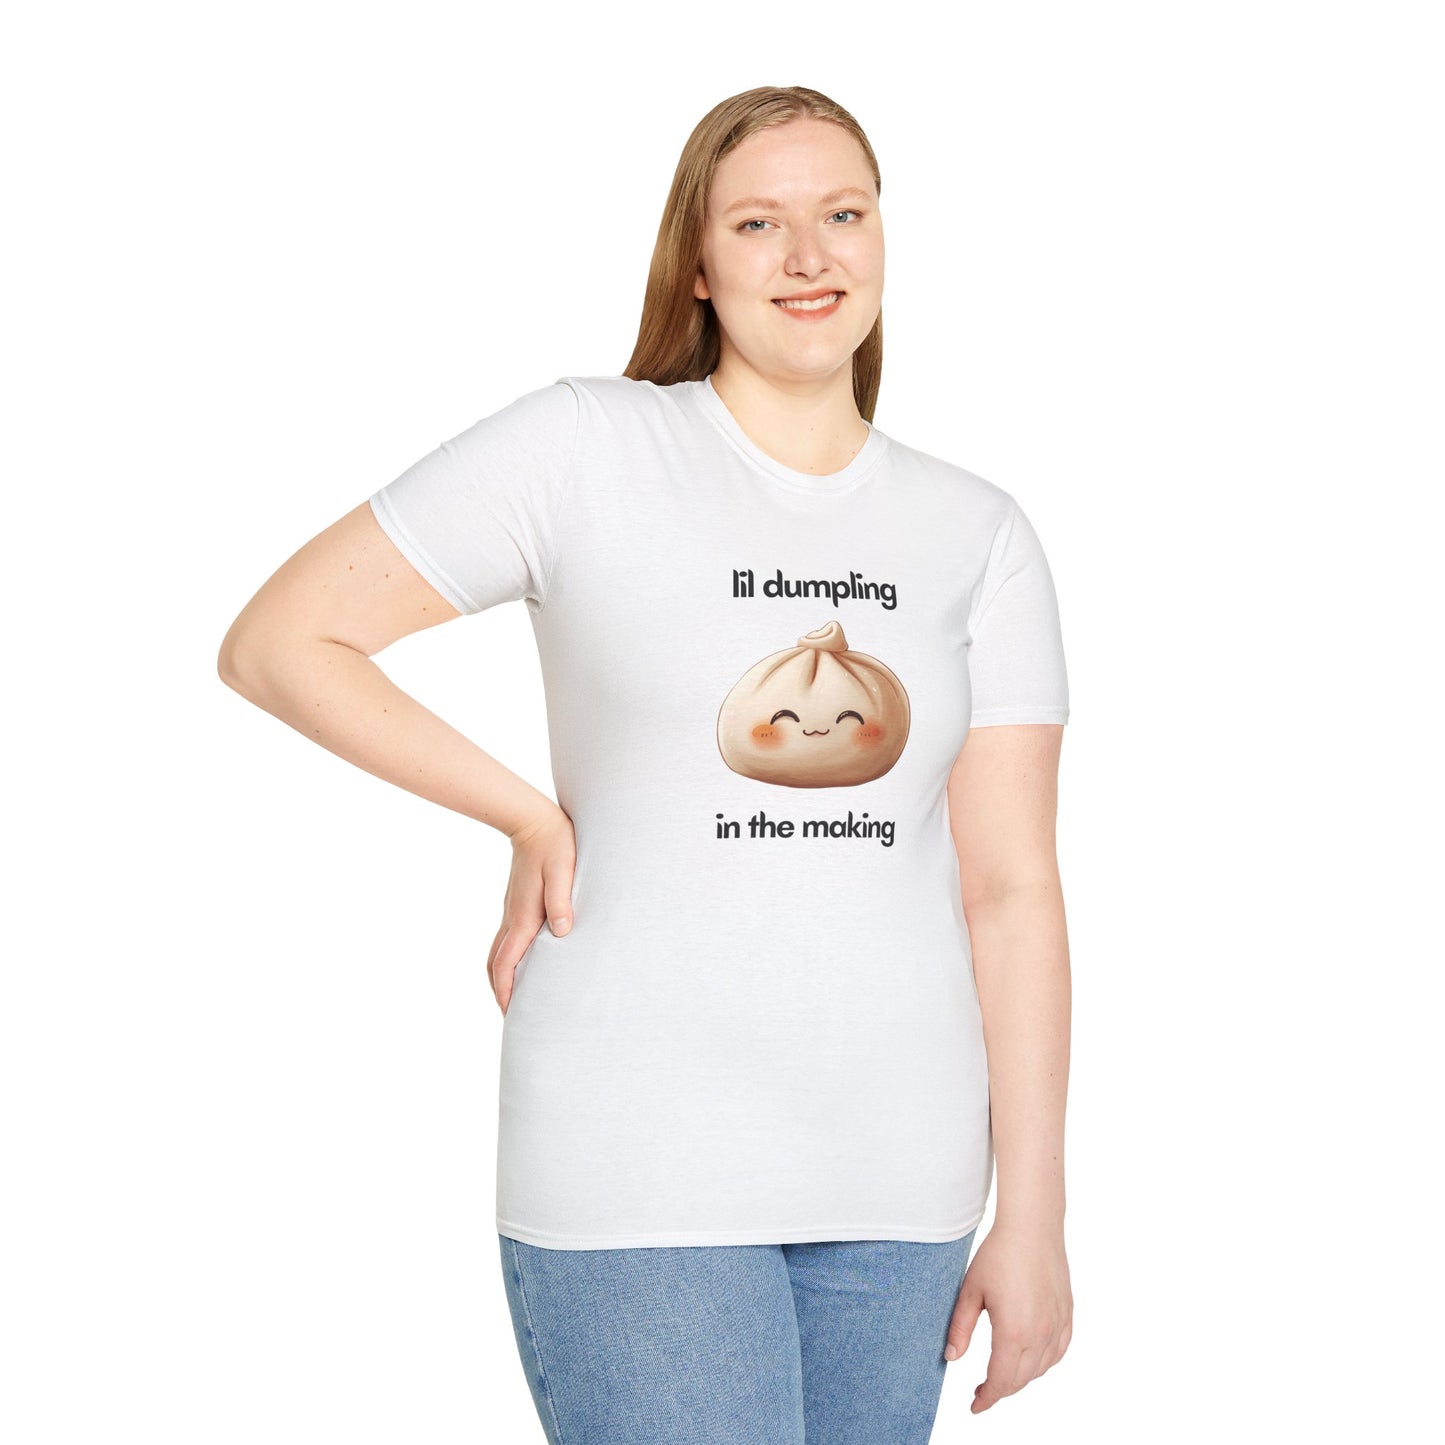 Expecting Moms - Unisex - Softstyle T-Shirt